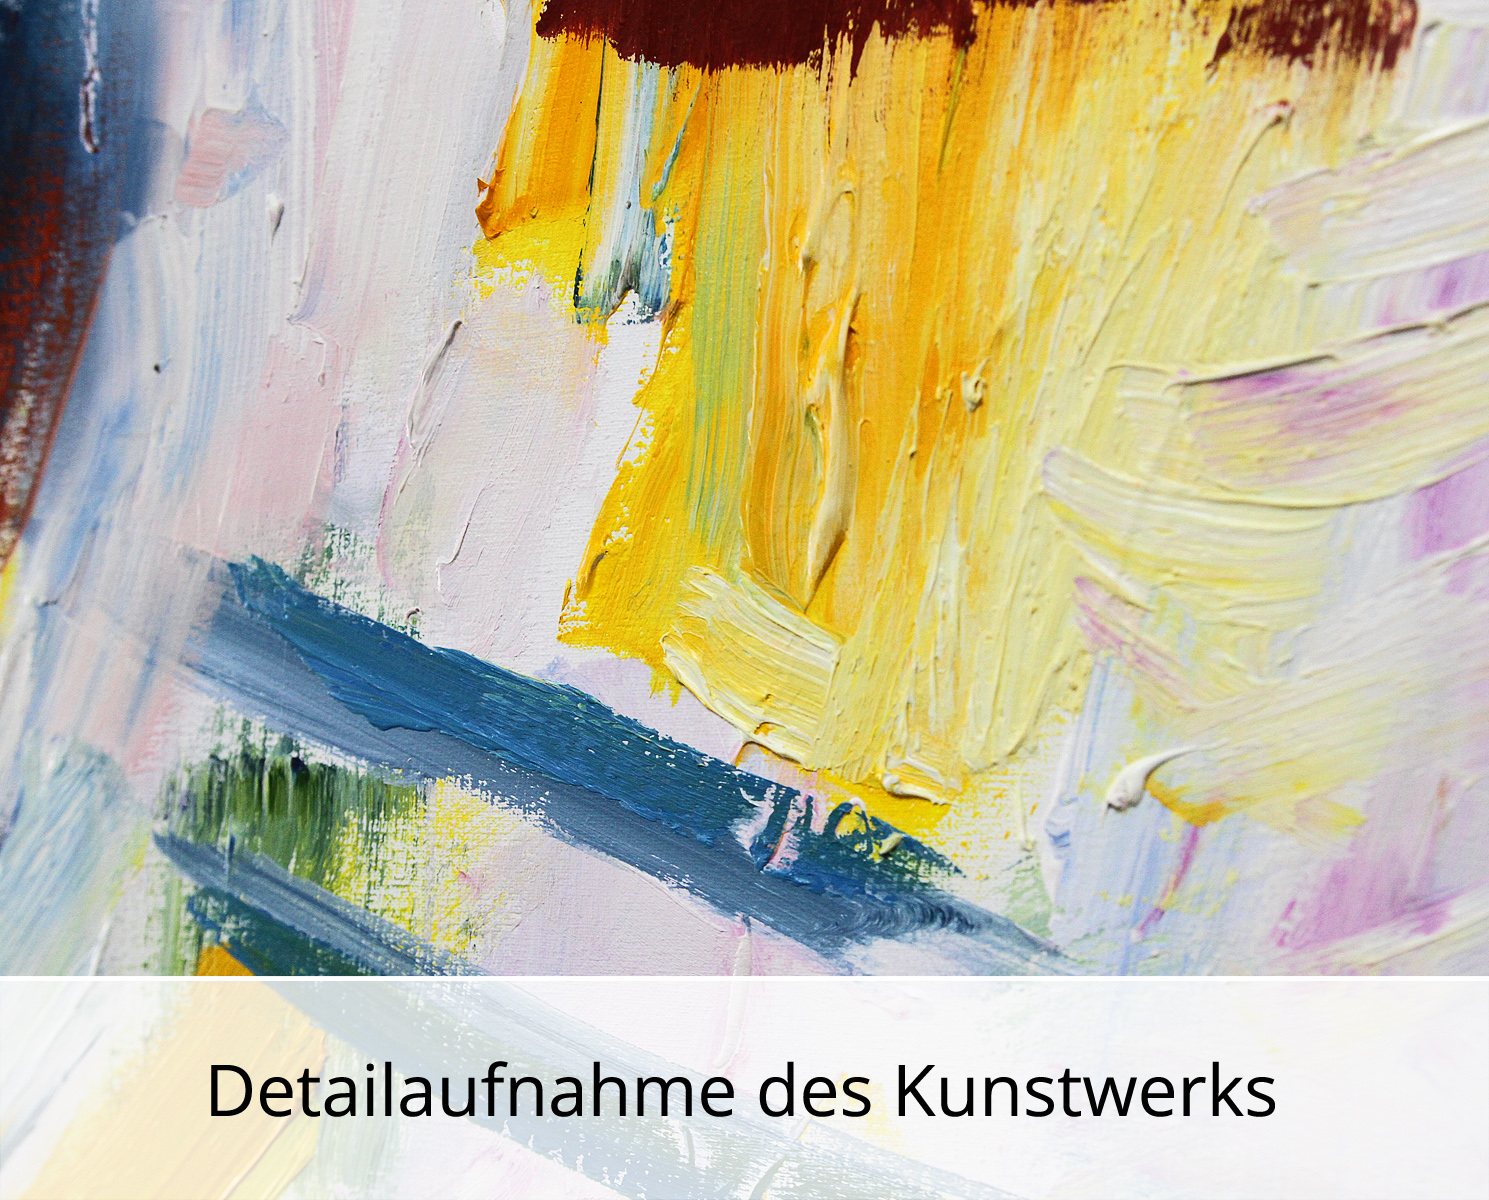 M. Cieśla: "Abstrakte Komposition 44", Original/Unikat, Expressionistisches Ölgemälde